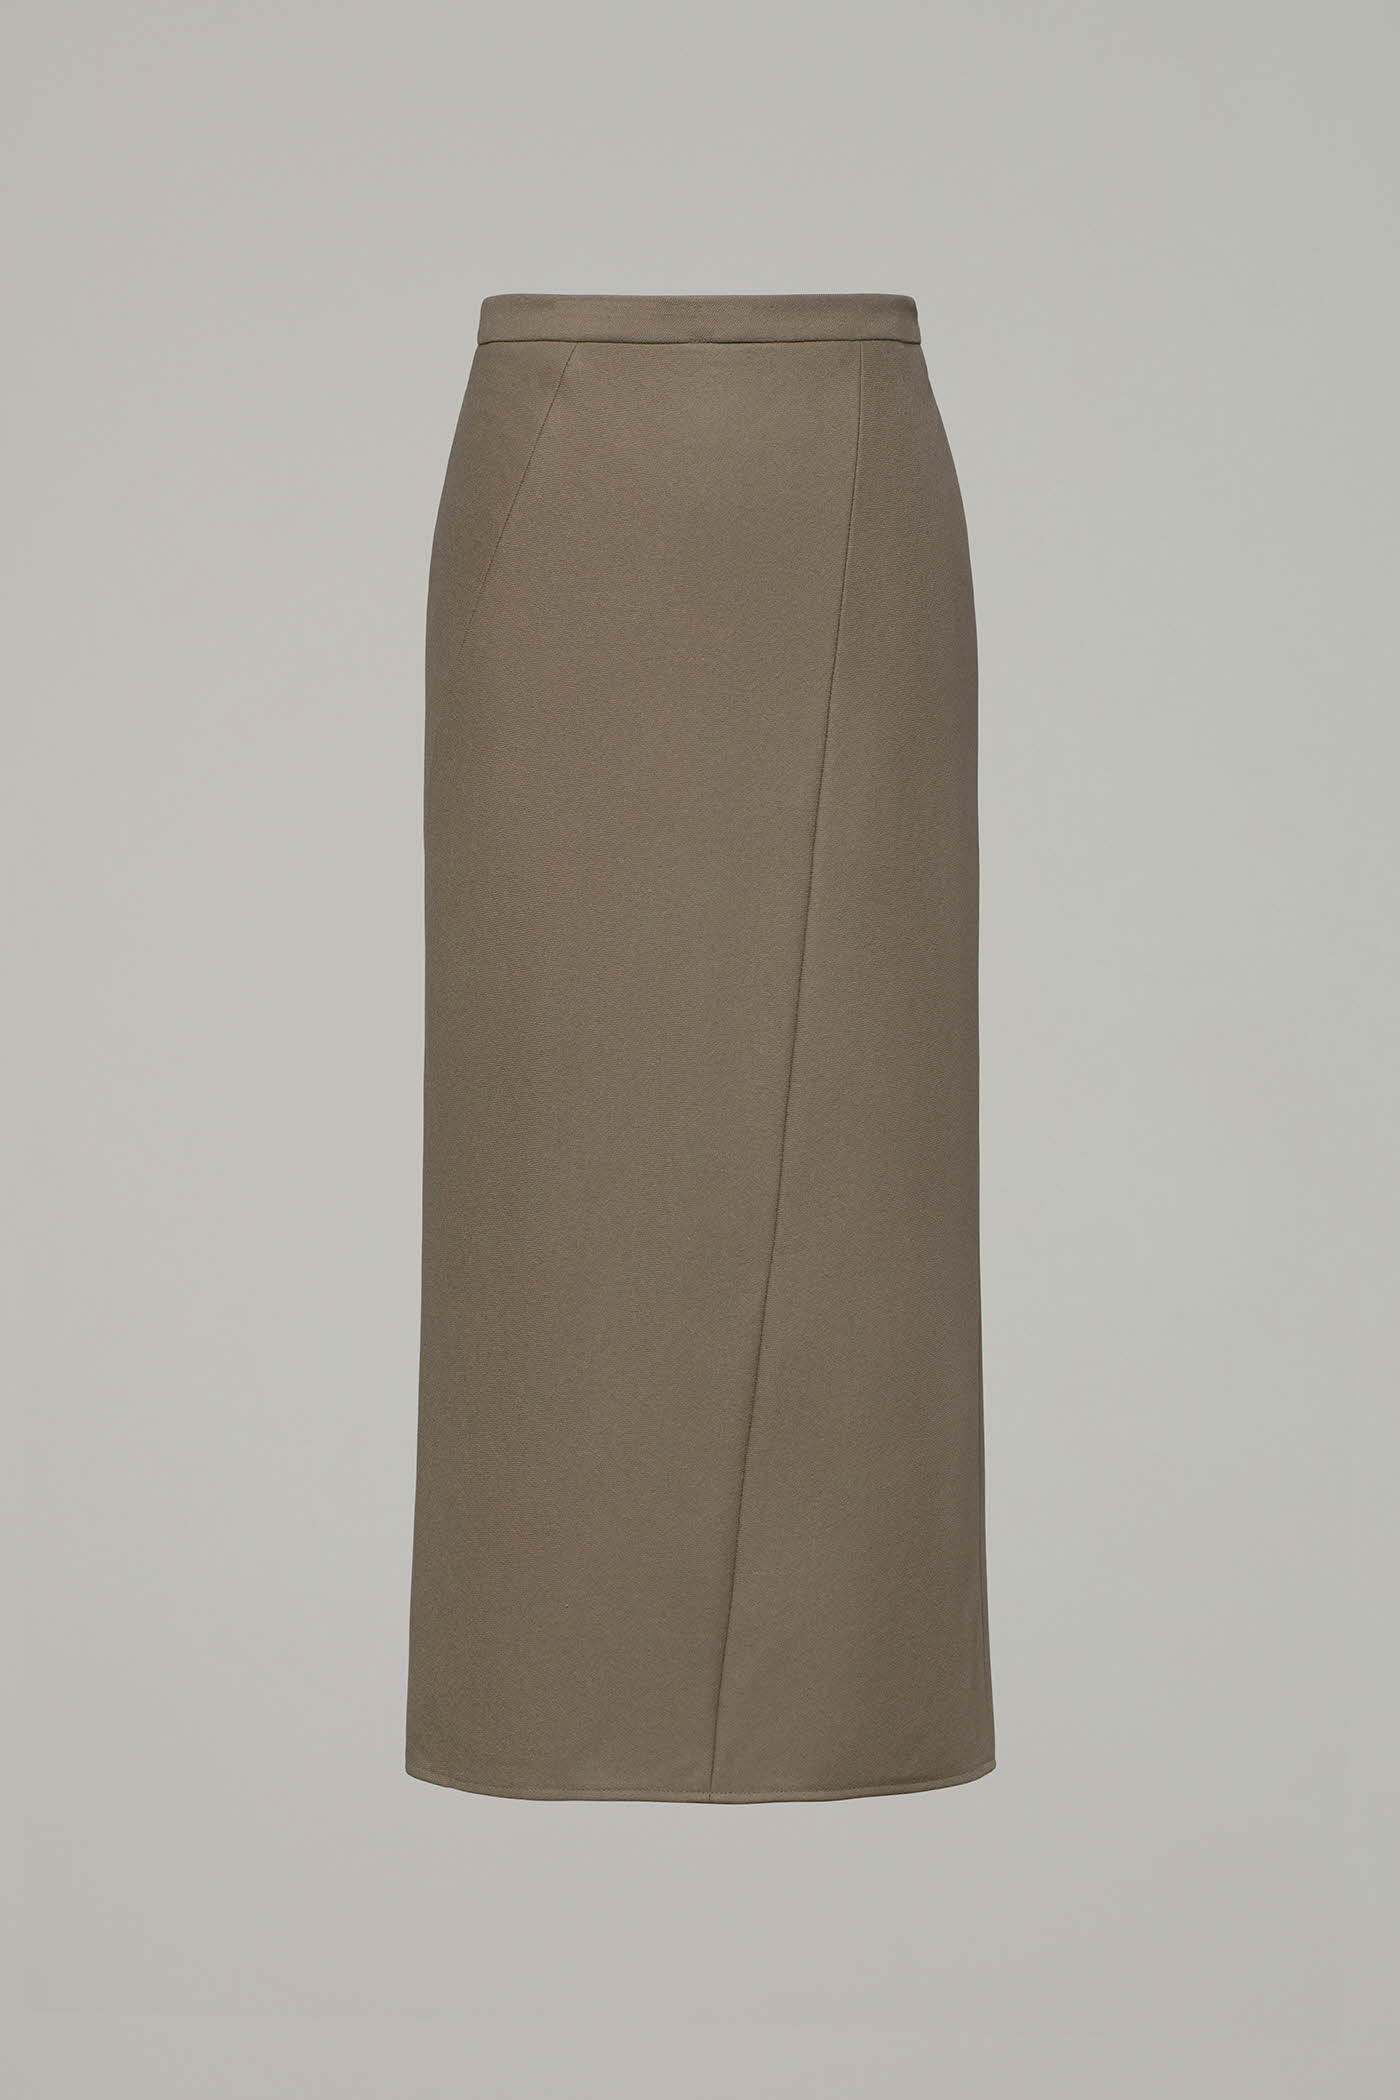 [SAMPLE]Bias Skirt[LMBASK110]-2color